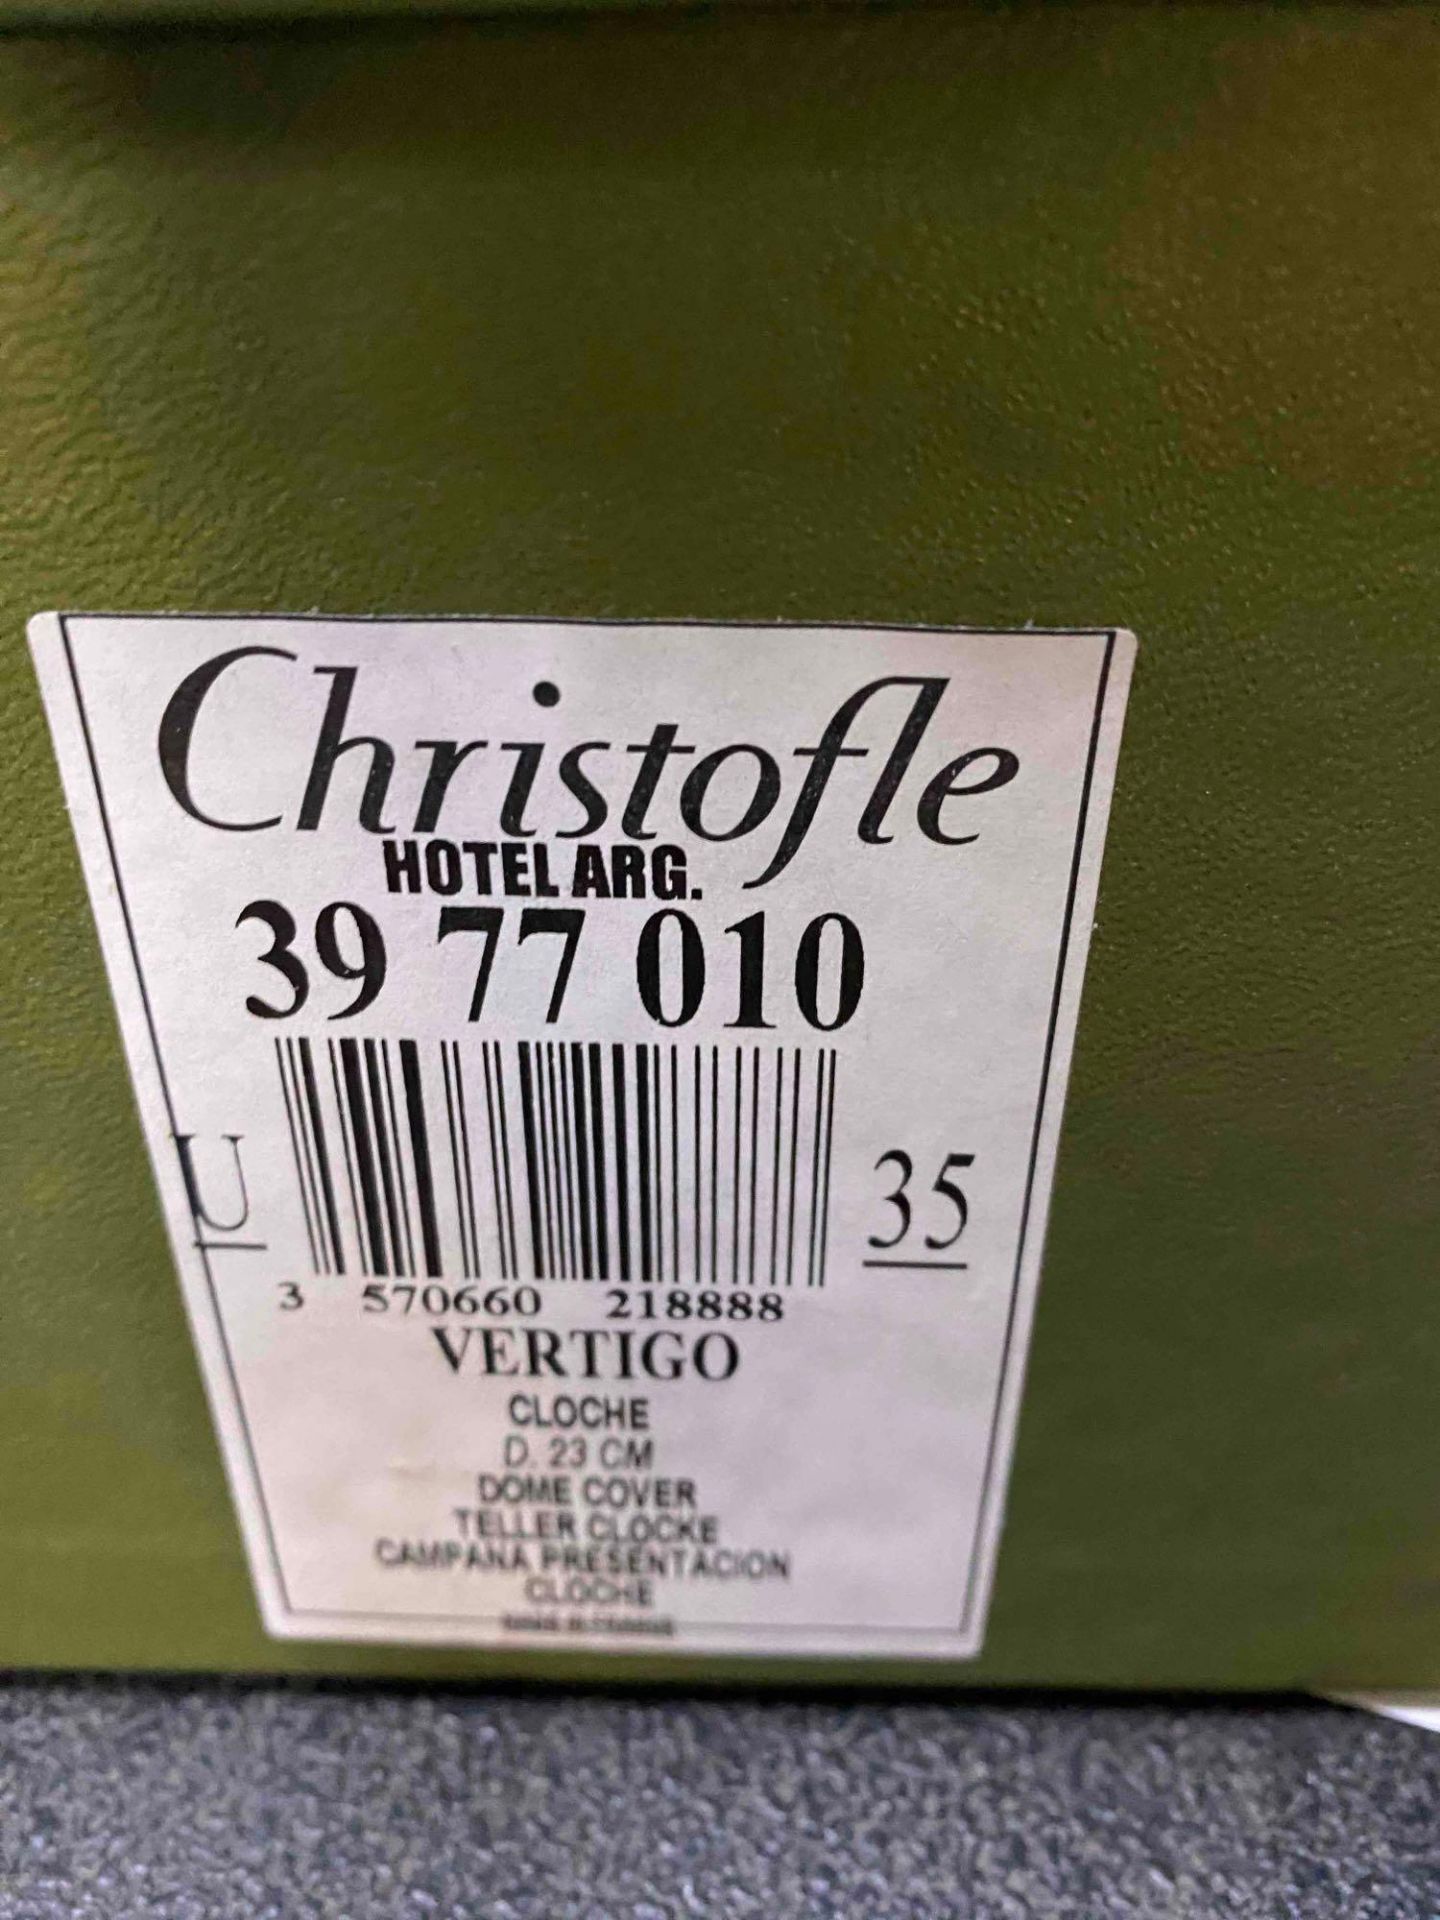 Christofle Vertigo Silver Plated Cloche 23cm New In Box - Image 3 of 3